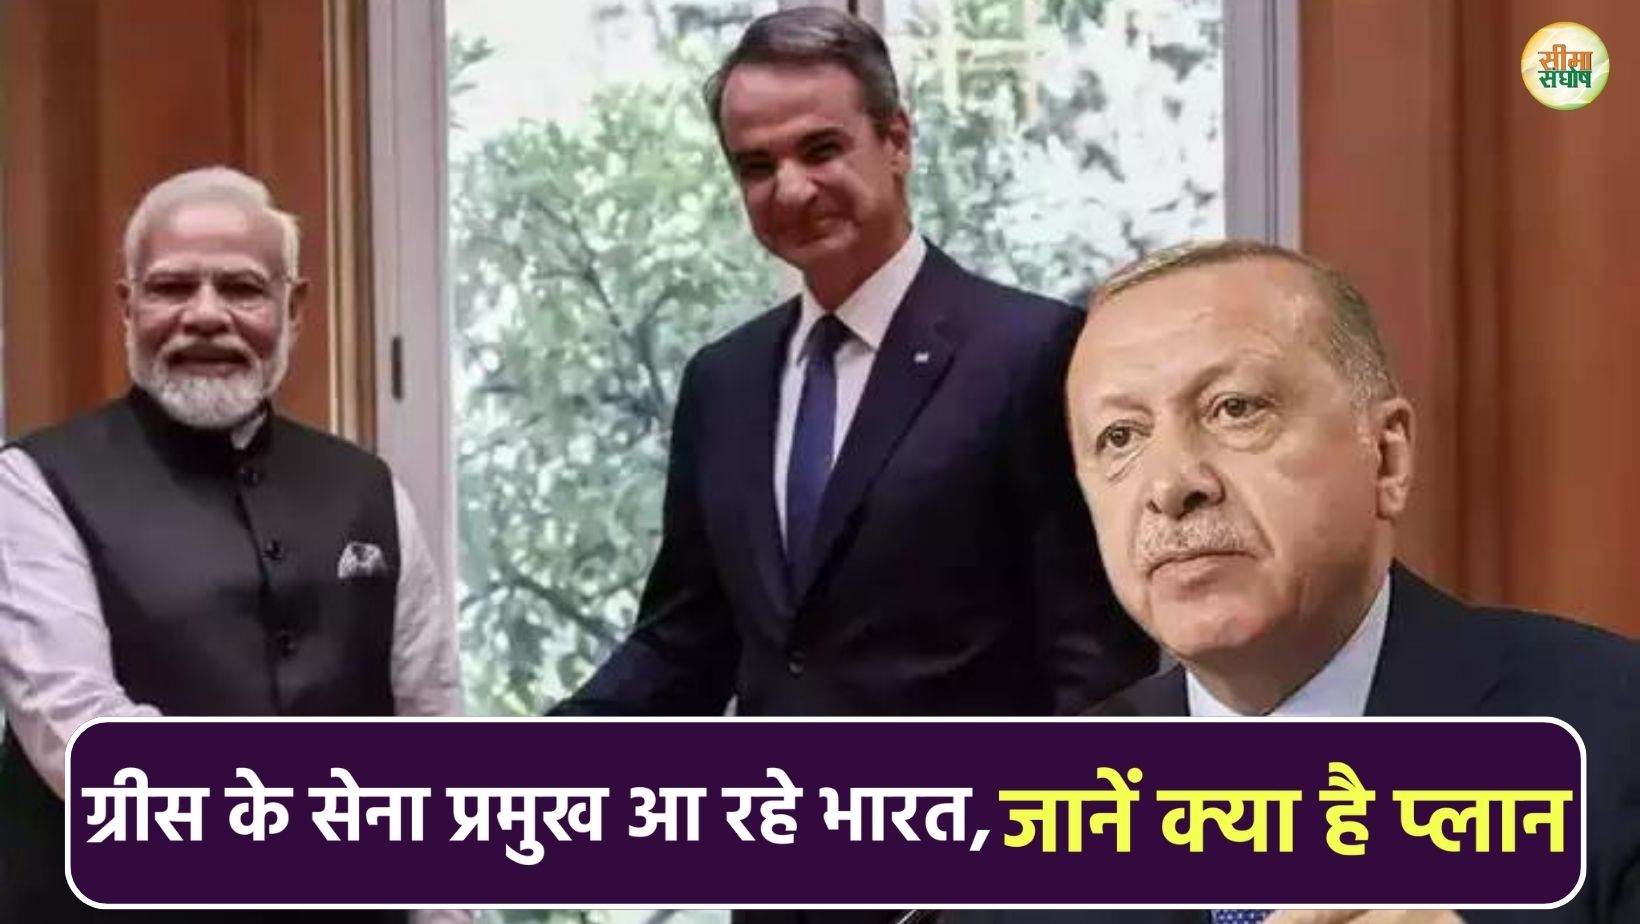 तुर्की के 'खलीफा' एर्दोगन को करारा जवाब देने की तैयारी, ग्रीस के सेना प्रमुख आ रहे भारत, जानें क्या है प्लान